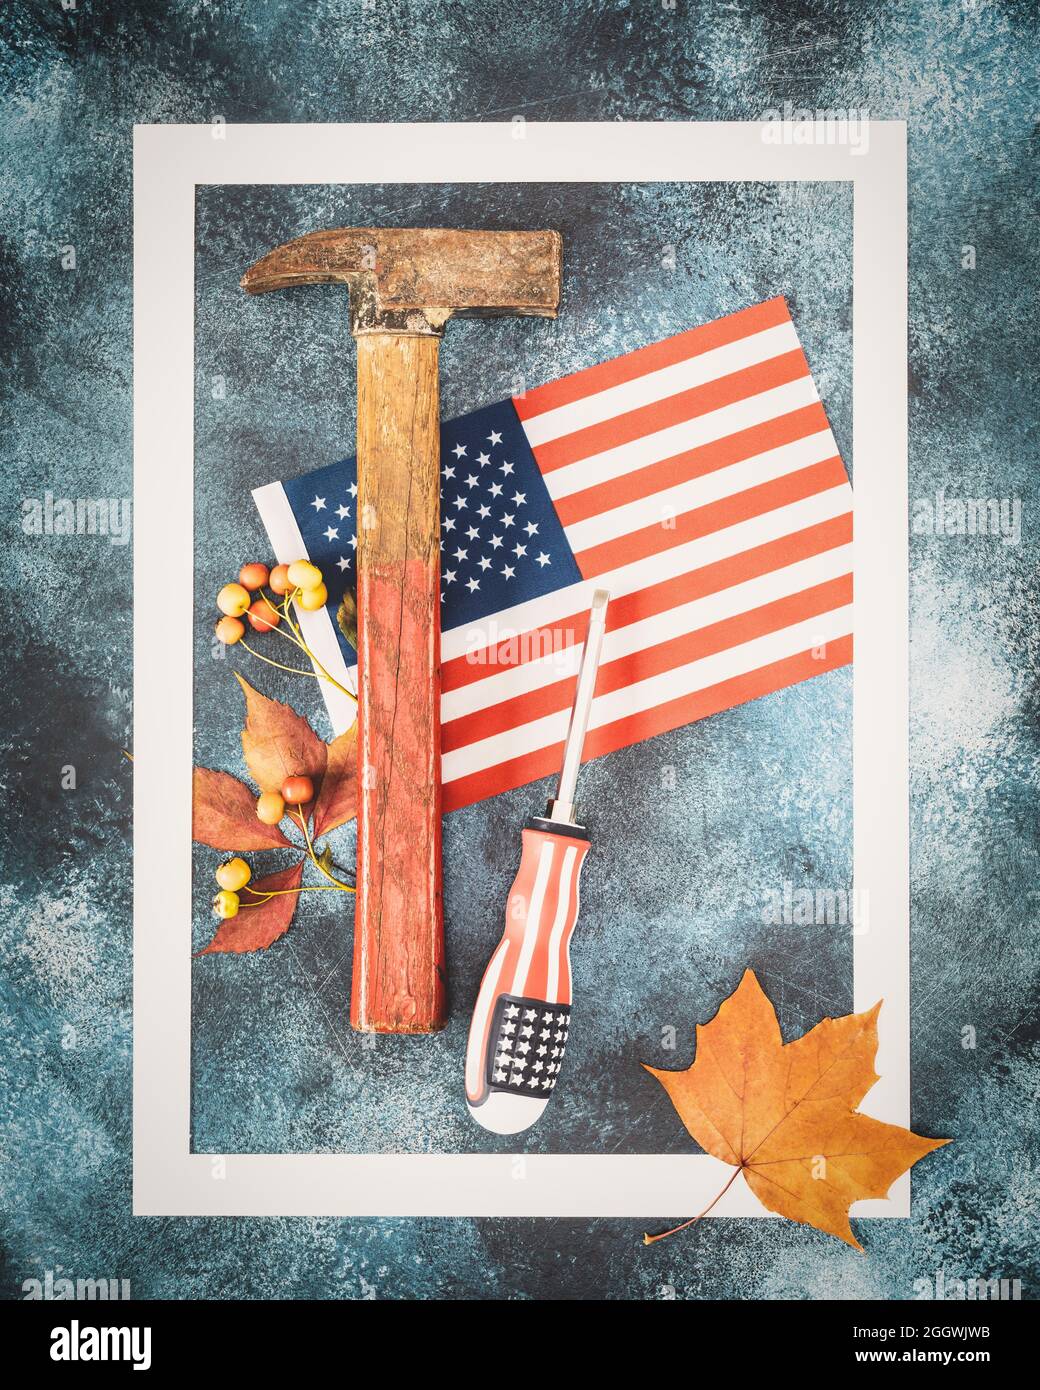 fête du travail, bannière de vacances avec drapeau américain, marteau, tournevis et feuilles d'automne dans un cadre blanc sur fond bleu. La fête du travail est l'Amérique et ca Banque D'Images